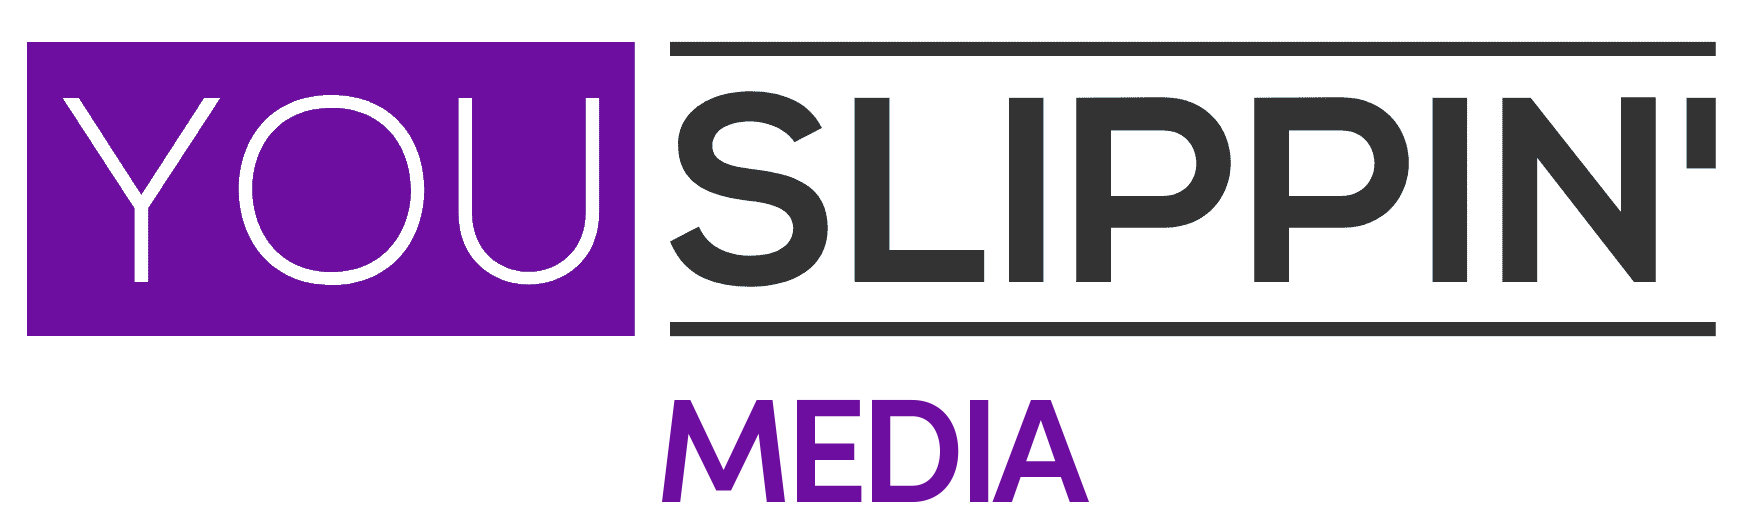 You Slippin' Media Logo